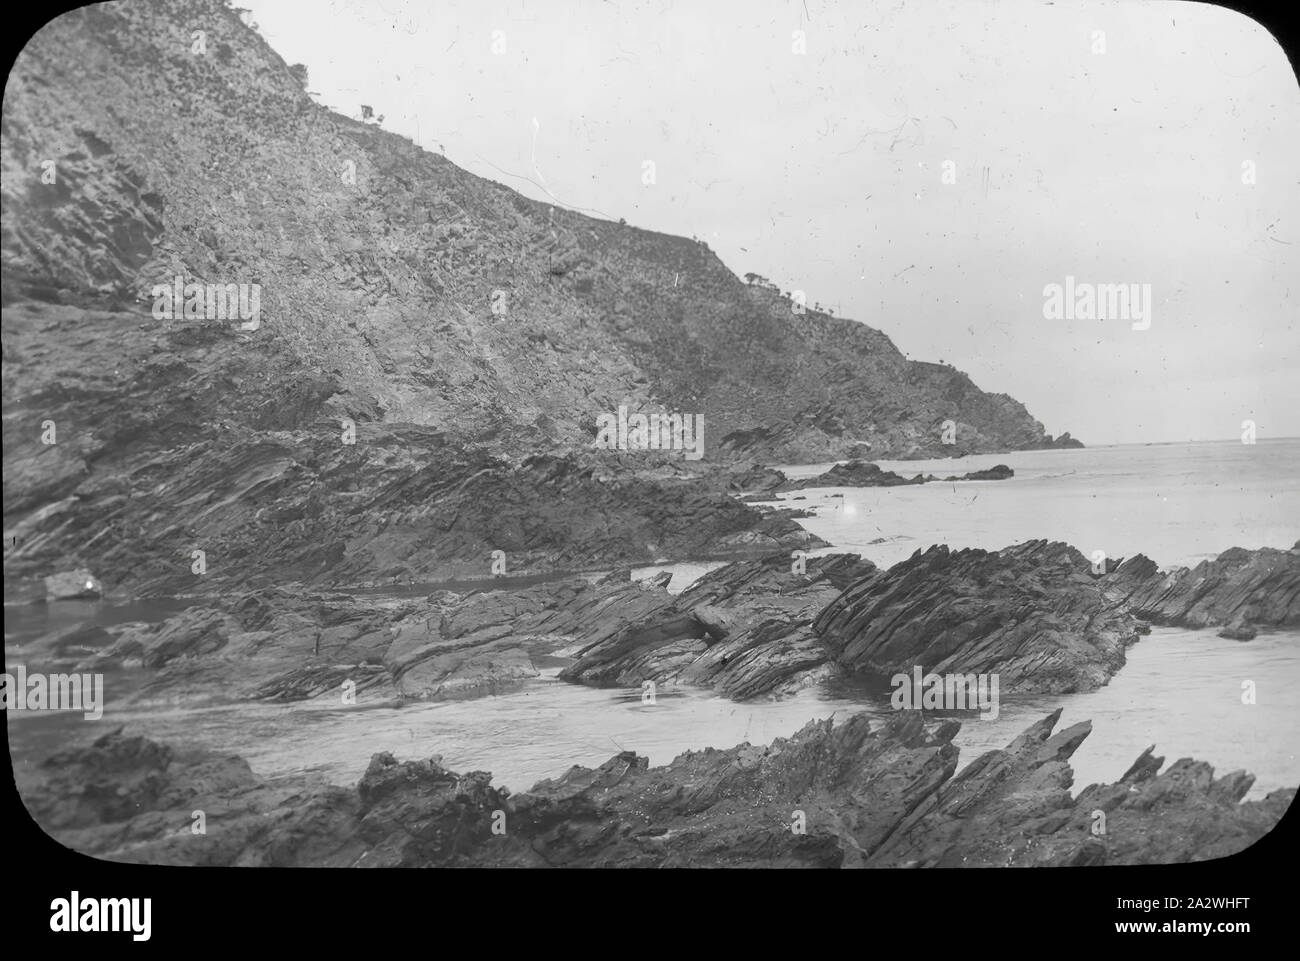 Lantern Slide-Steilküsten, Australien, Datum unbekannt, Schwarz/Weiß-Bild des schroffen Steilküsten fotografiert von A.J. Campbell, genau dort, wo in Australien ist unbekannt Stockfoto